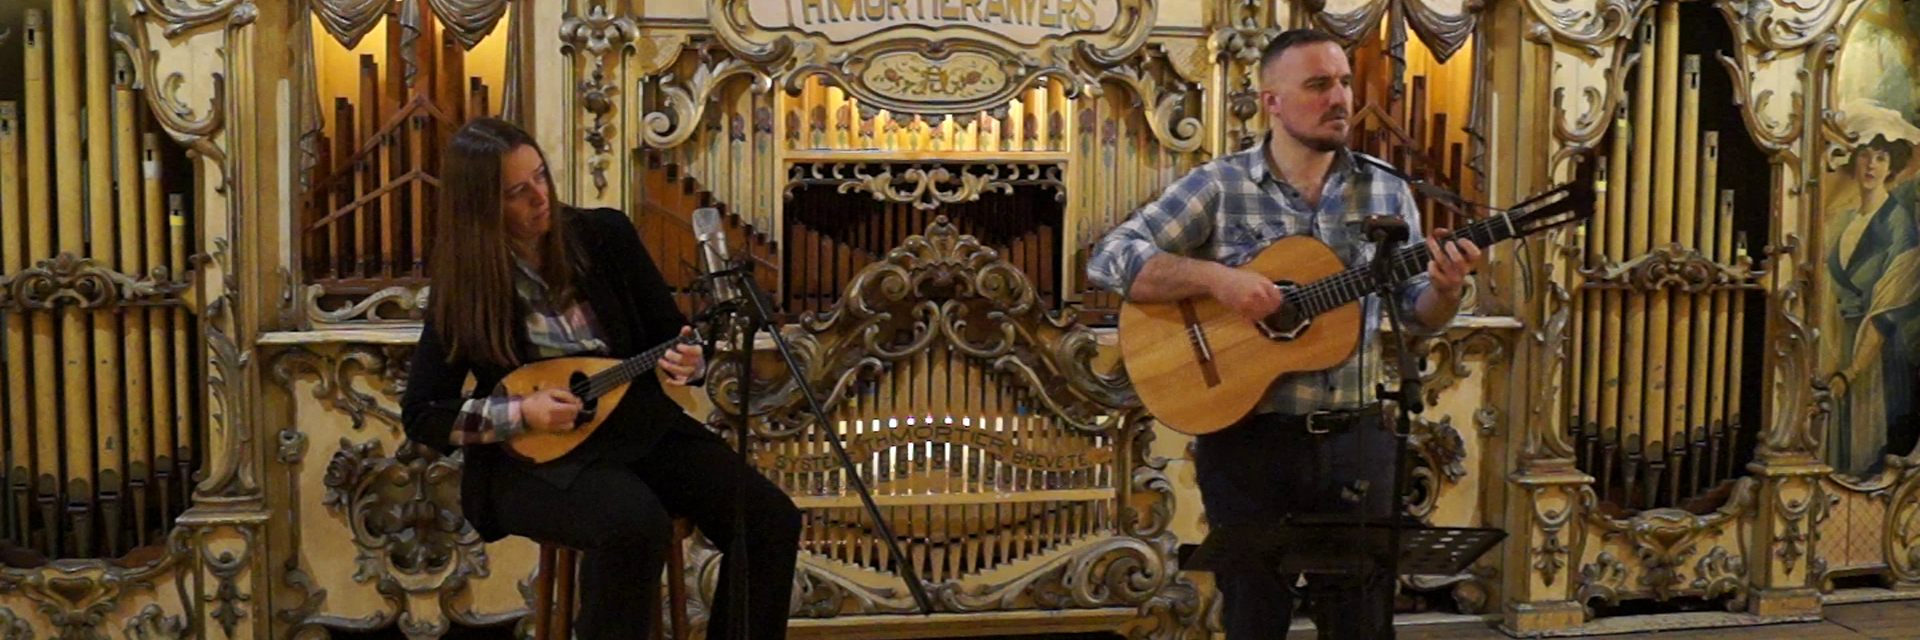 Franco Canta Folk Duo, musicien Folk en représentation à Nord - photo de couverture